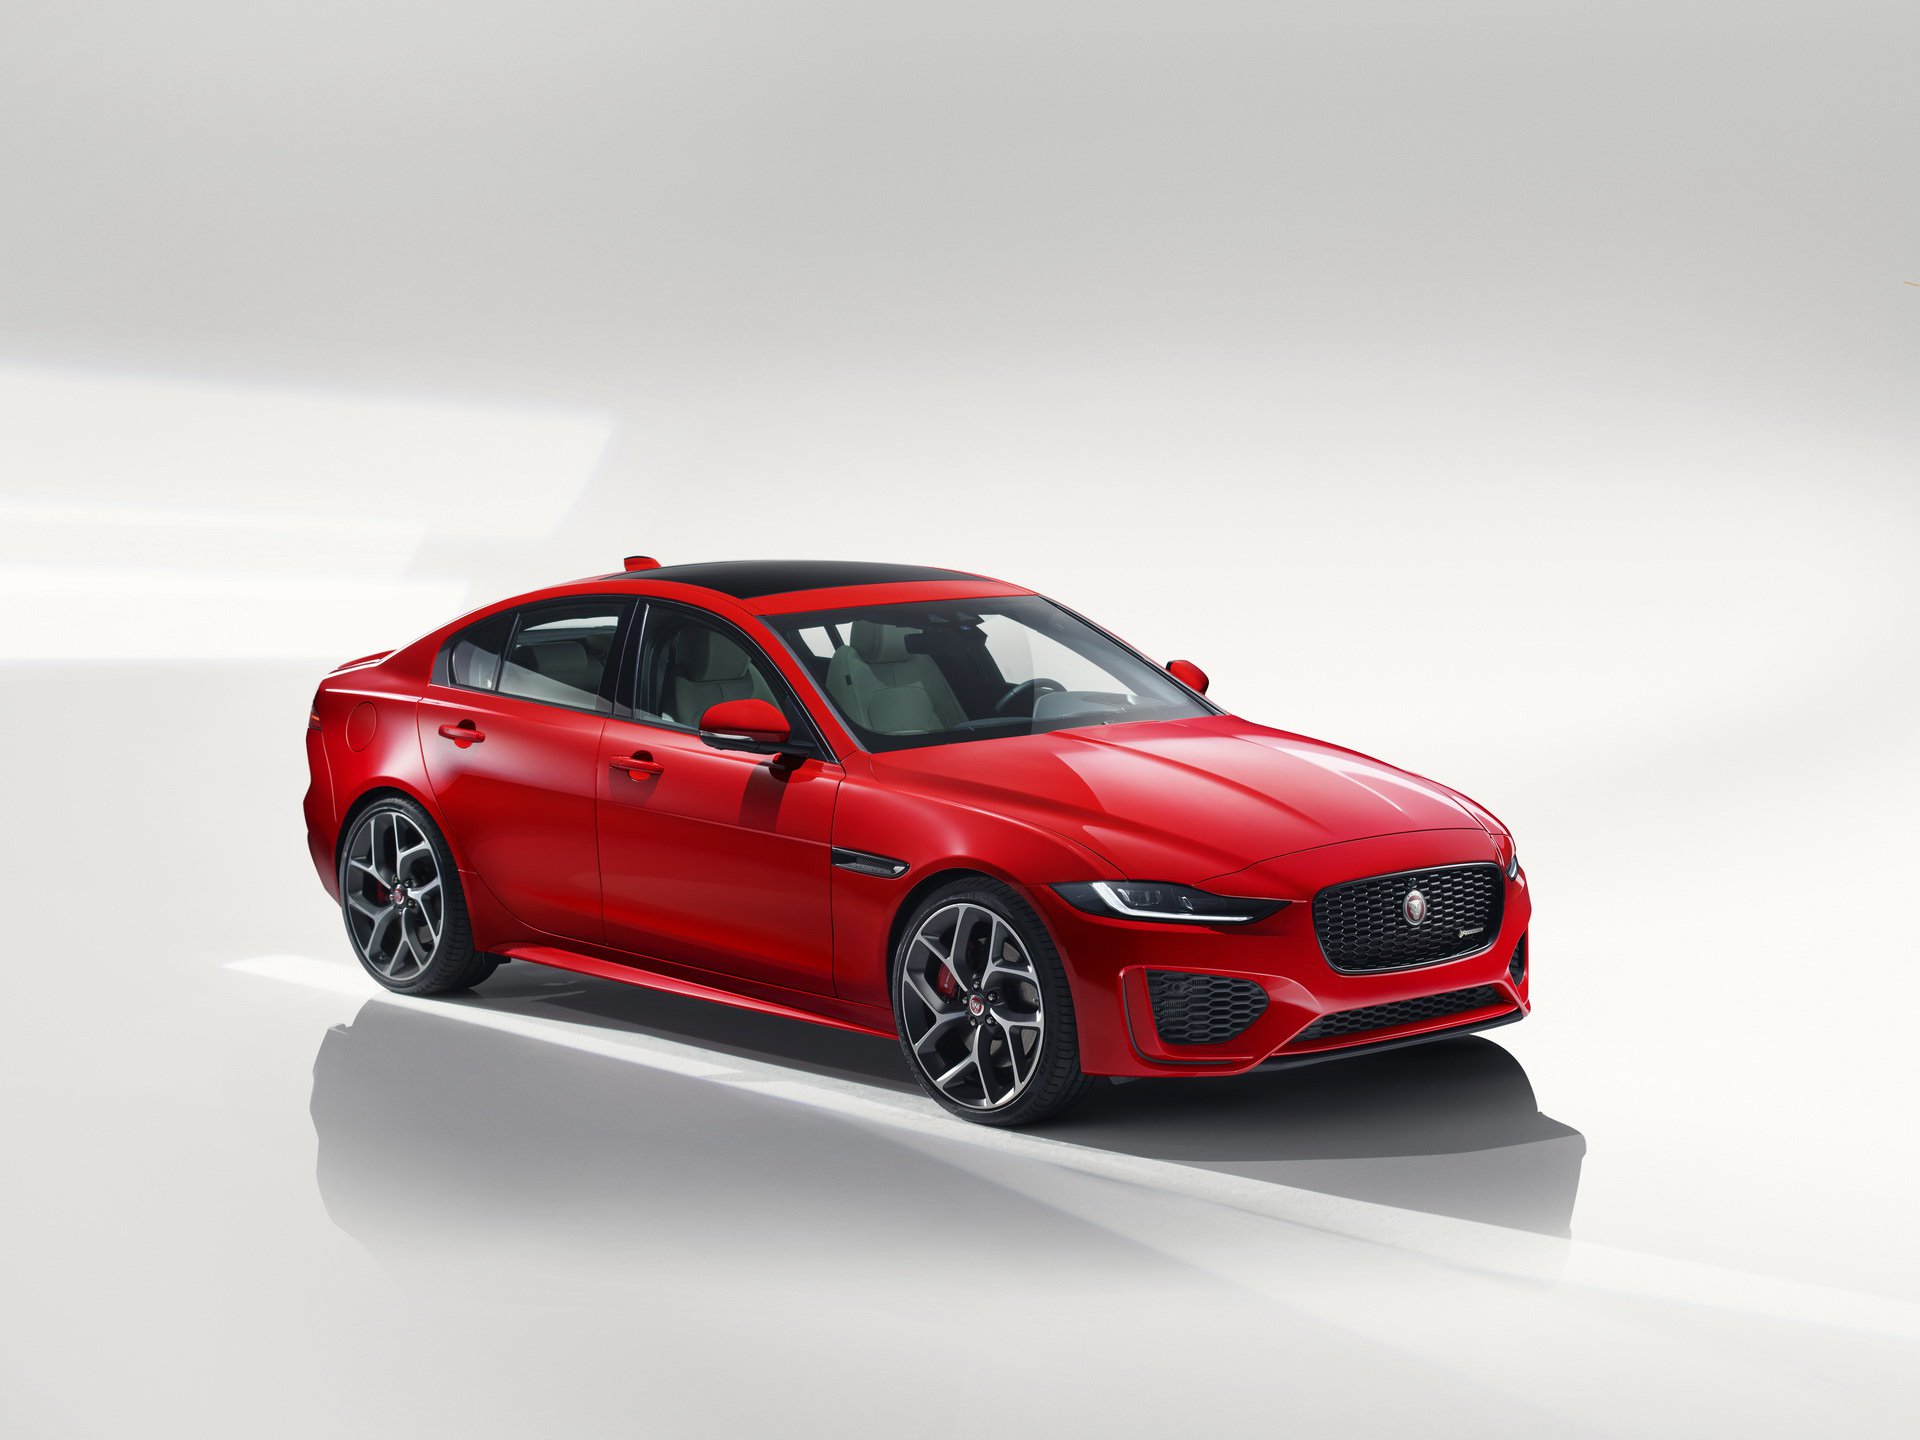 2020 jaguar xe revealed facelifted model drops v6 engine